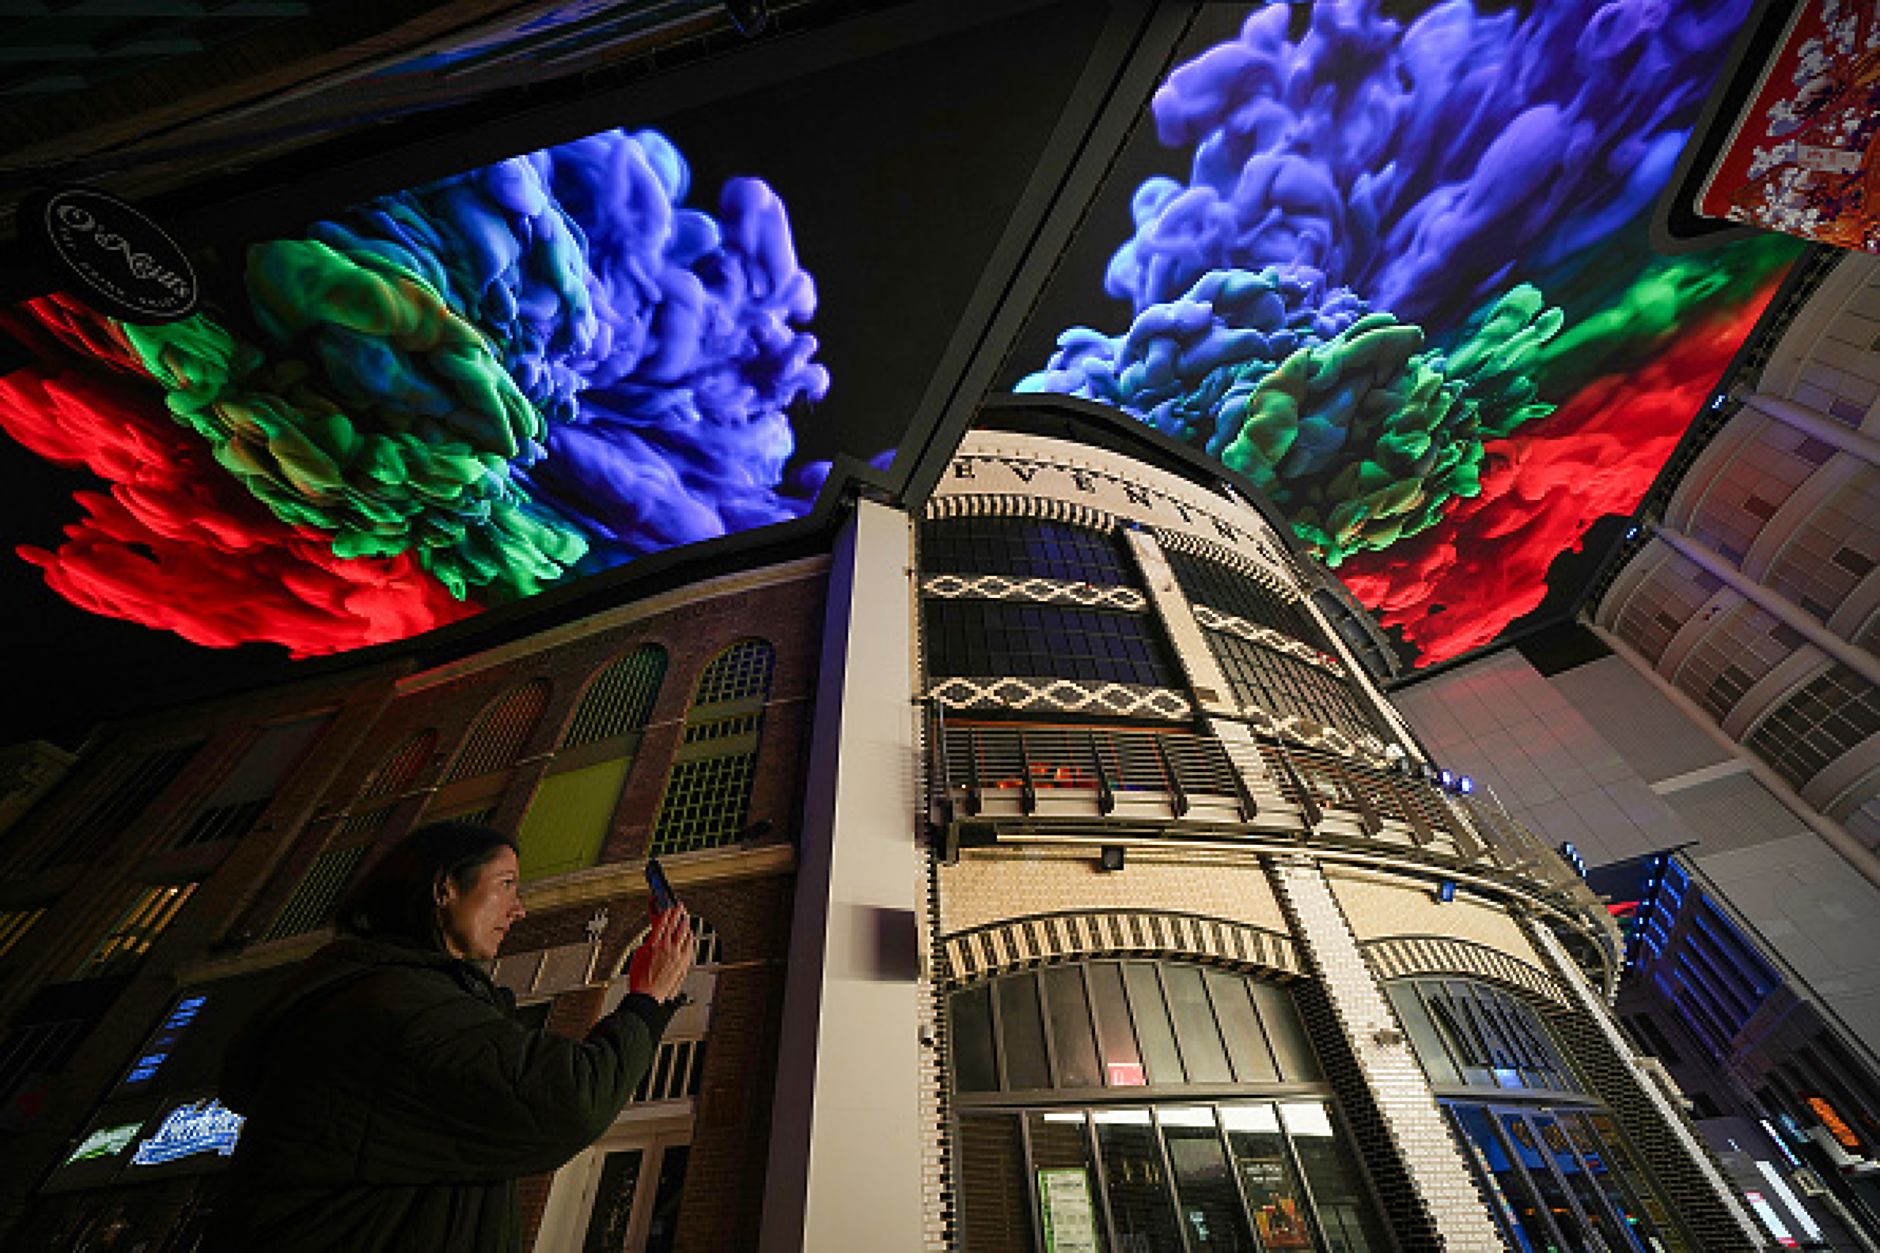 Анимации "избухнаха" в пищни цветове и образи на 20 март върху огромен цифров екран с размерите на 5 тенис корта, монтиран на покрива на наскоро ремонтираната сграда Printworks в Манчестър, Англия.  Снимка: /Getty Images